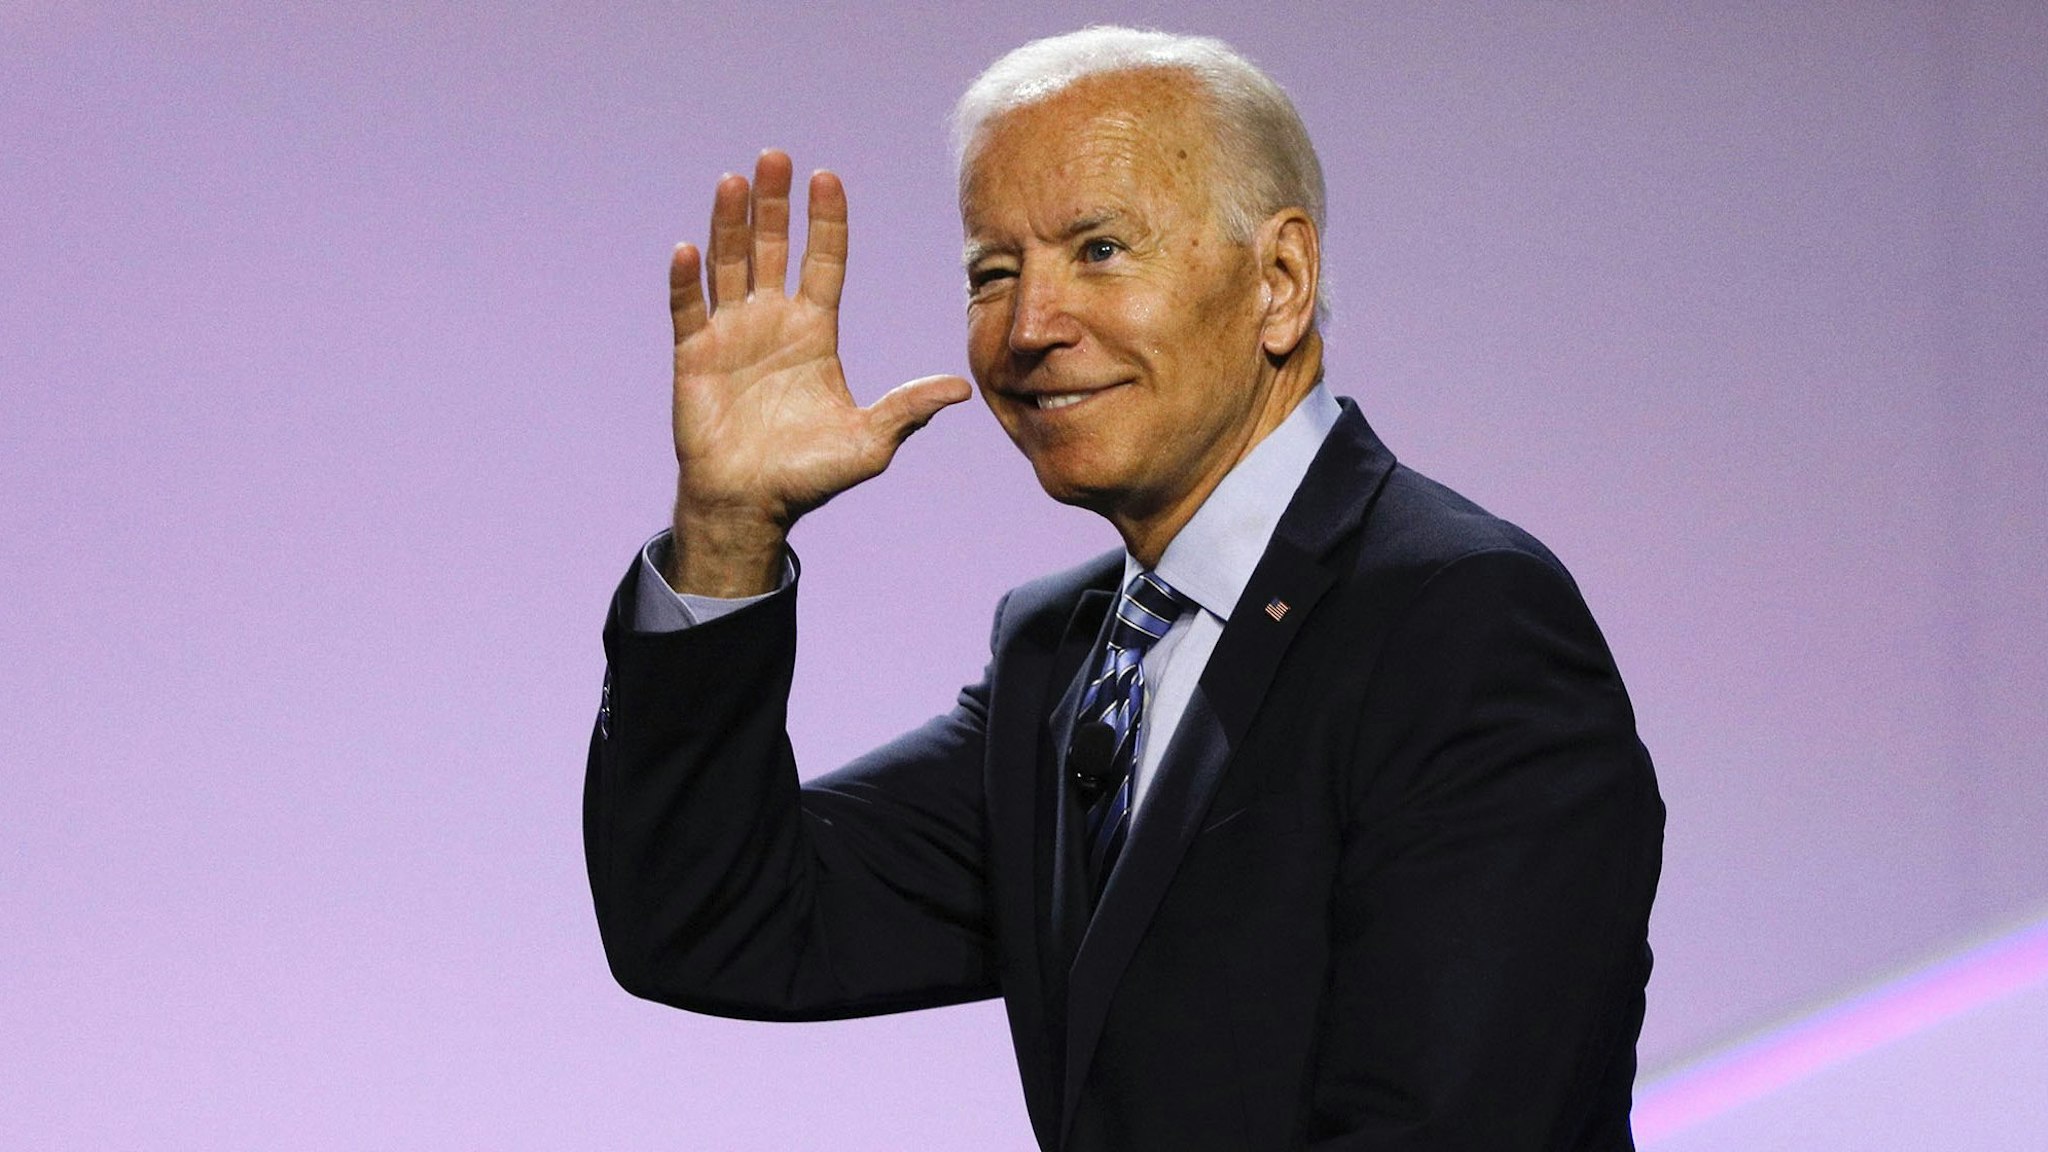 Joe Biden waving.